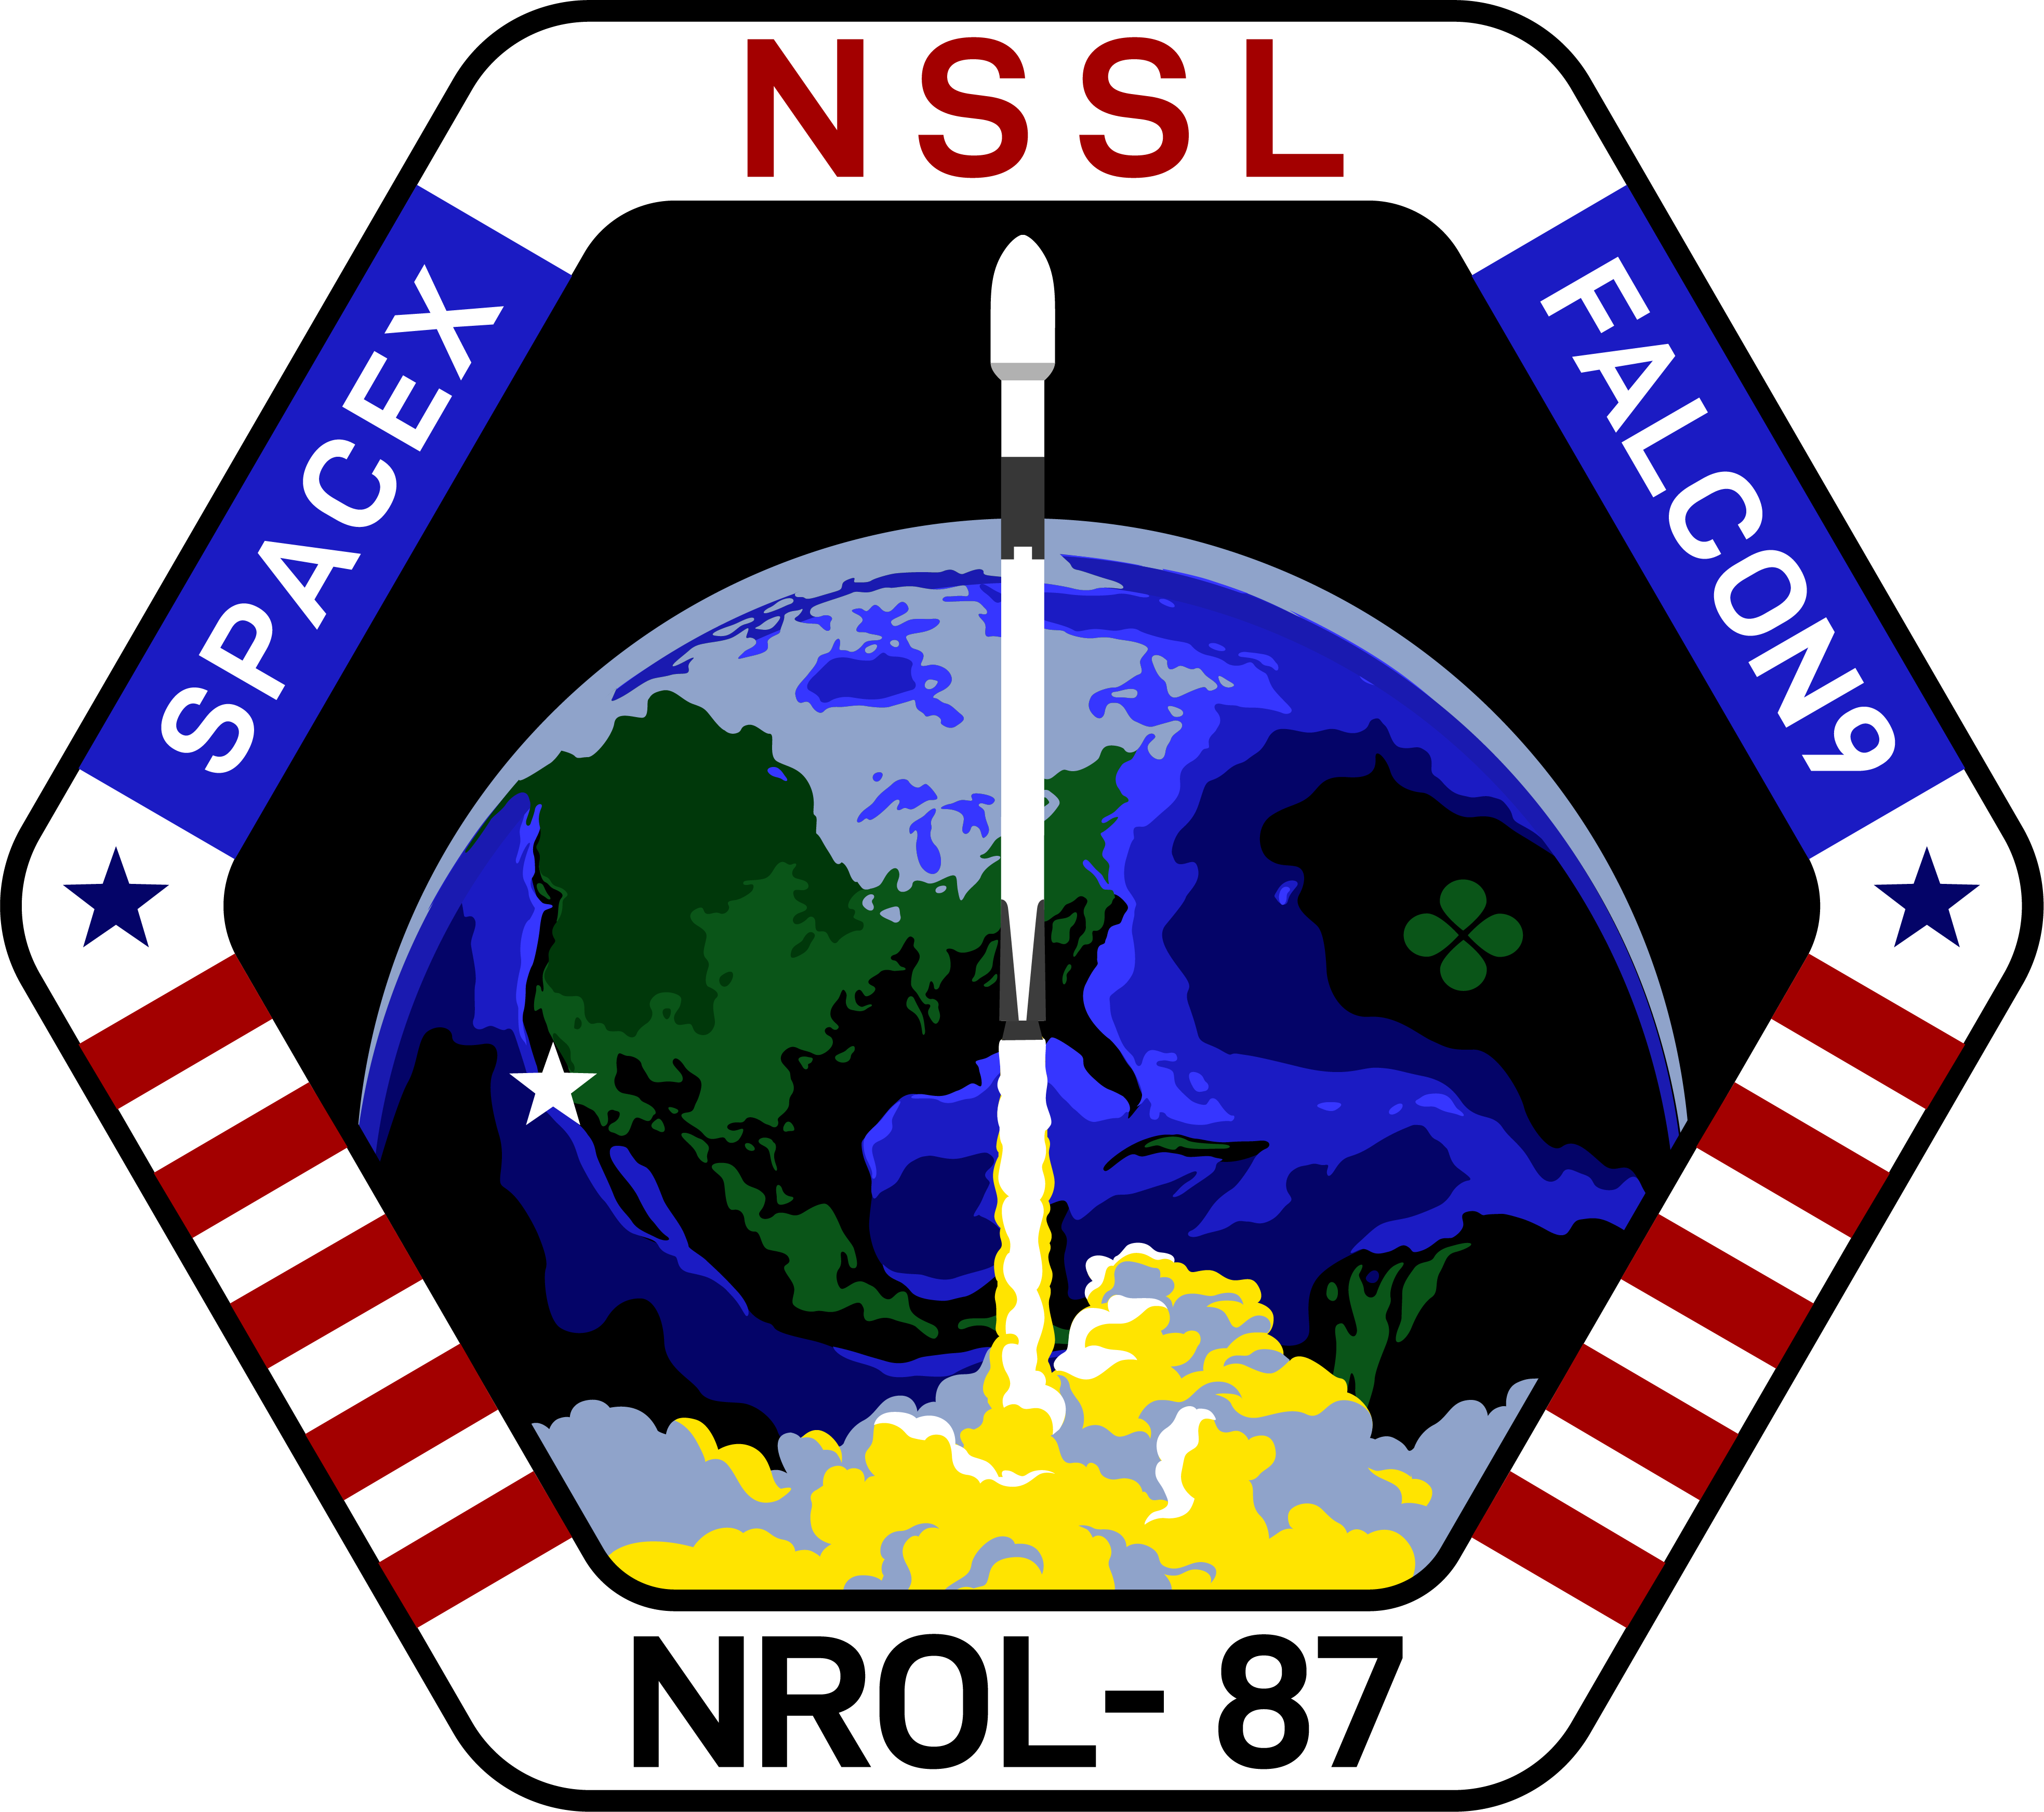 Parche por parte de SpaceX para la misión NROL-87